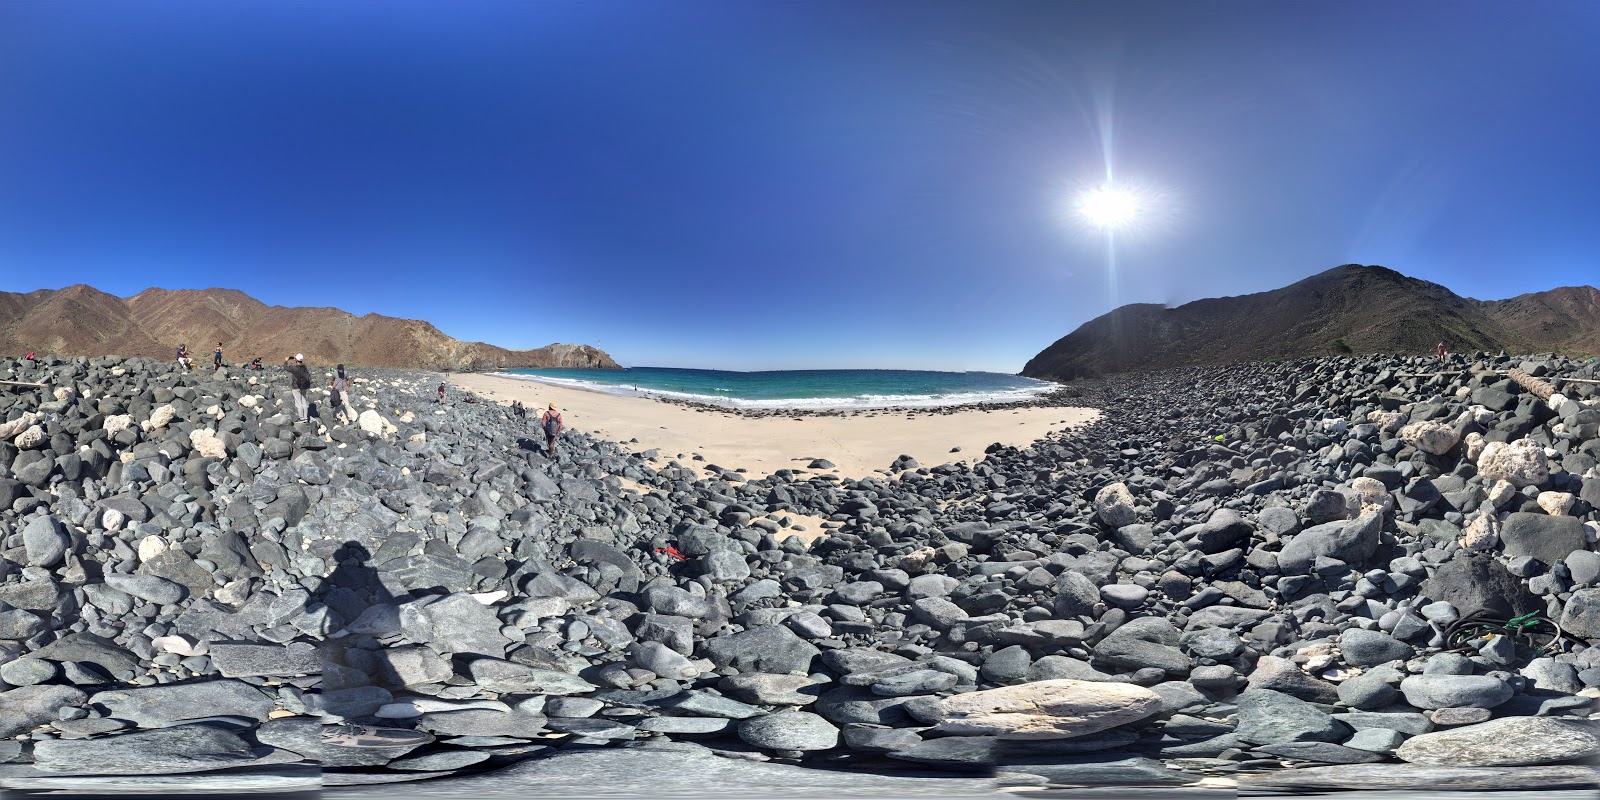 Fotografija AlQalqali beach nahaja se v naravnem okolju